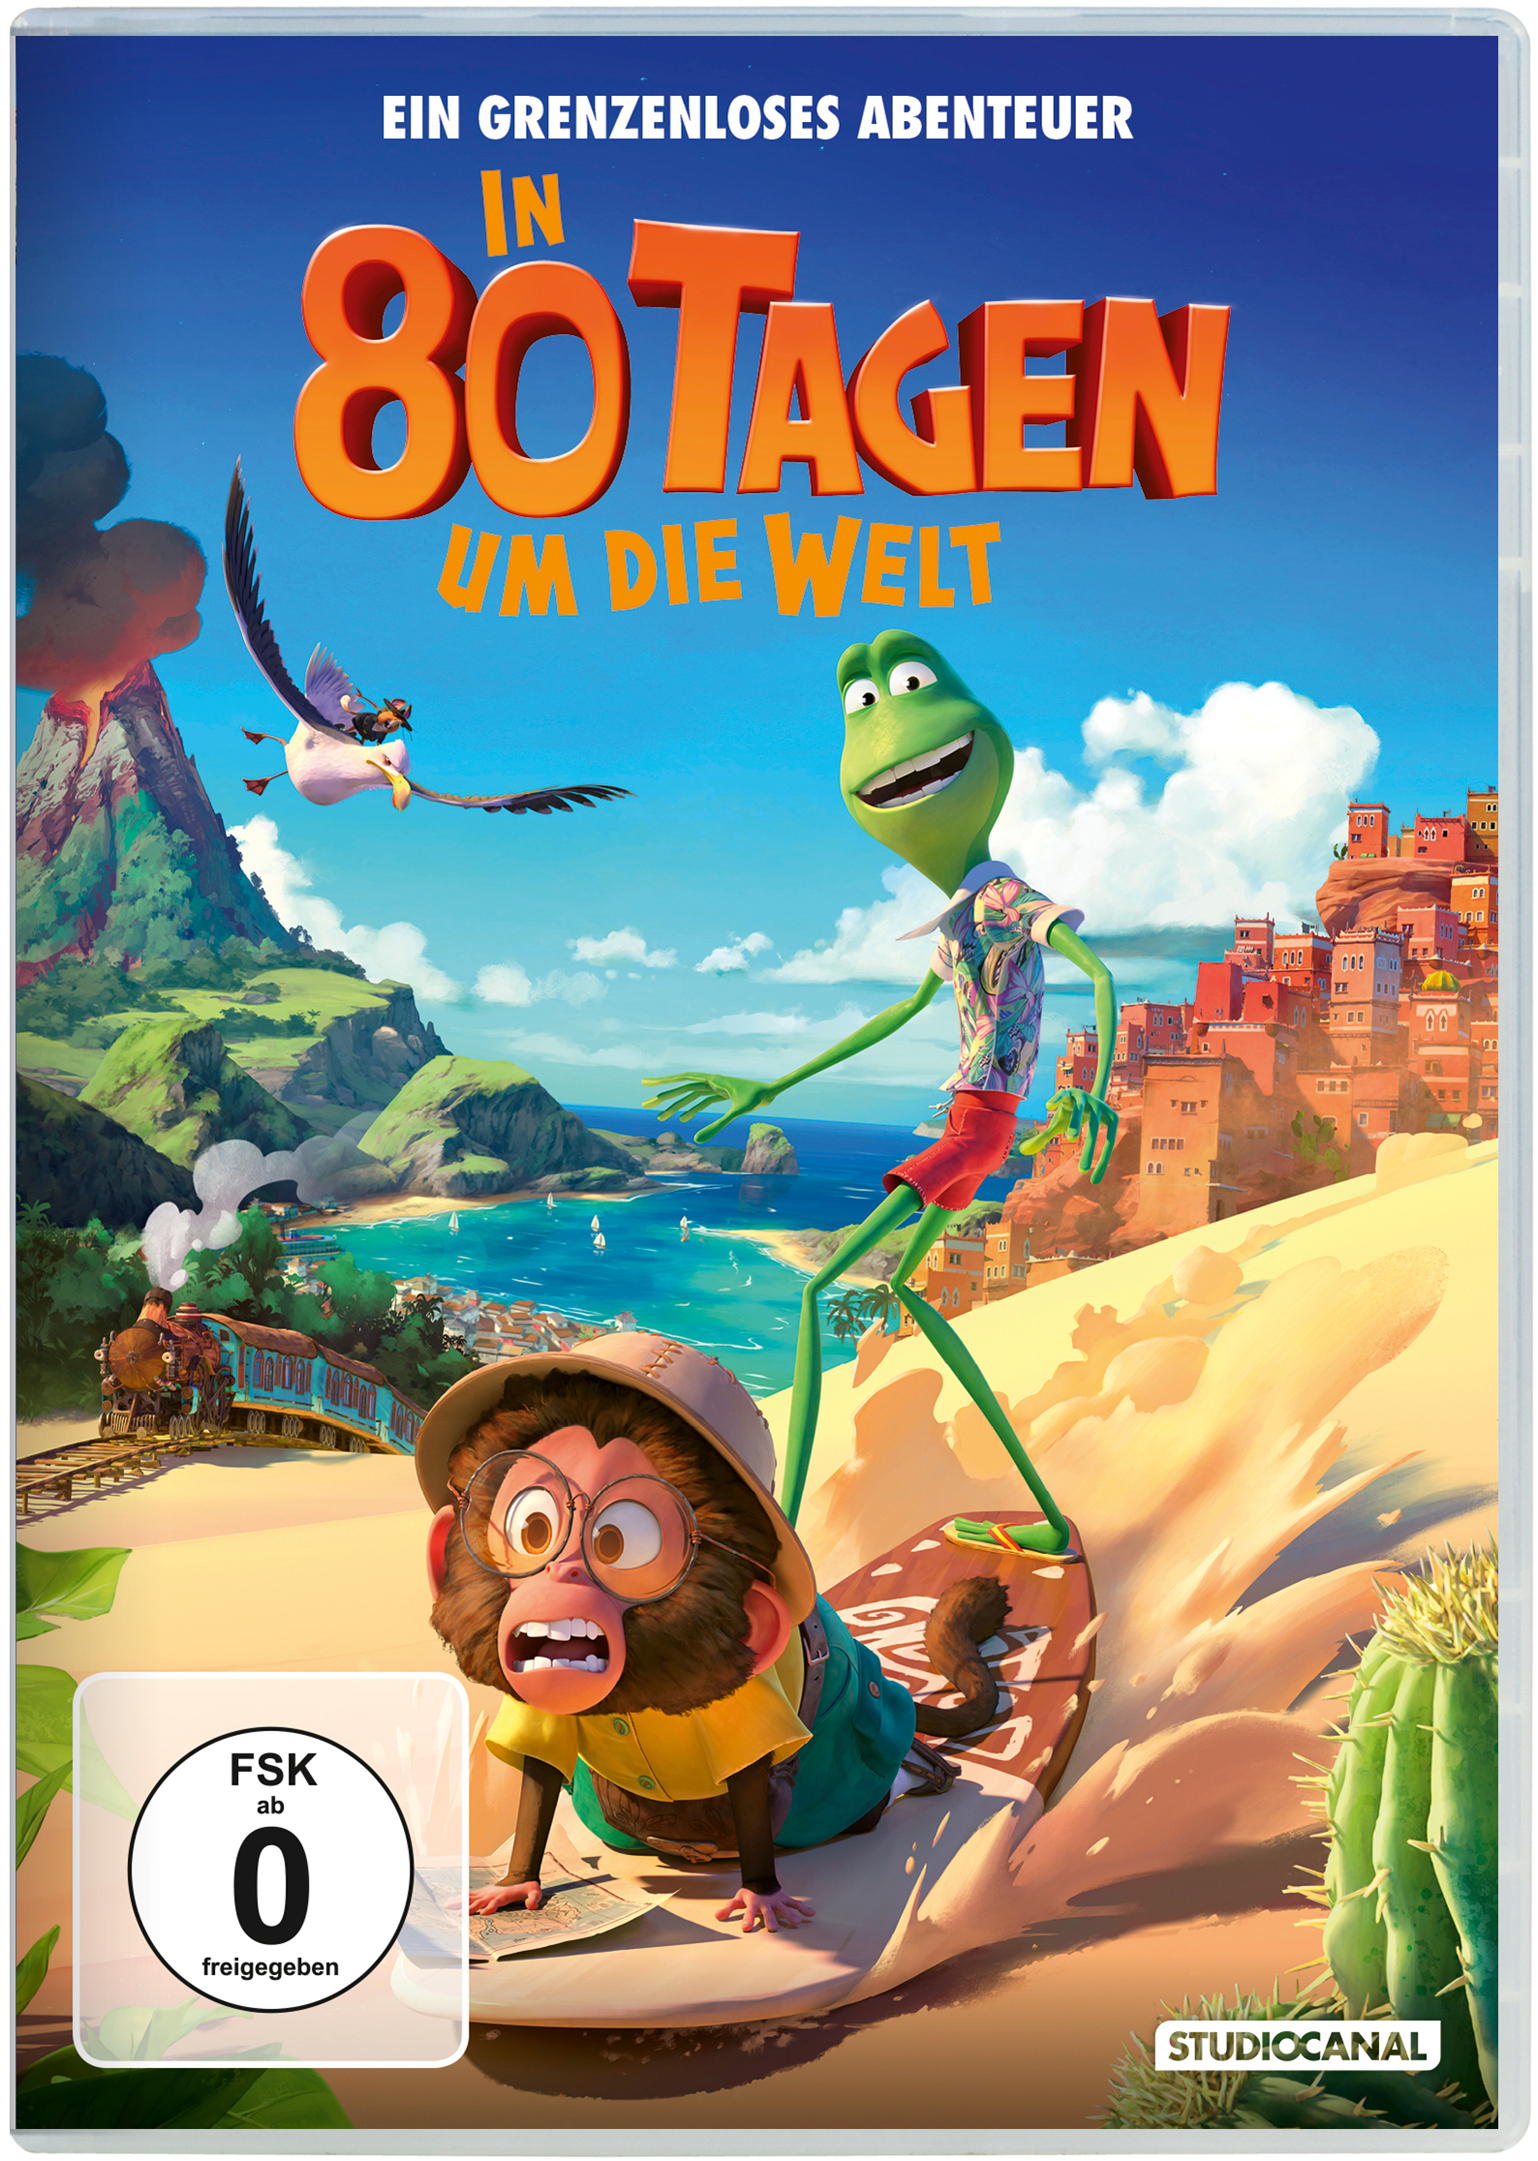 In 80 Tagen um die Welt (DVD) Cover